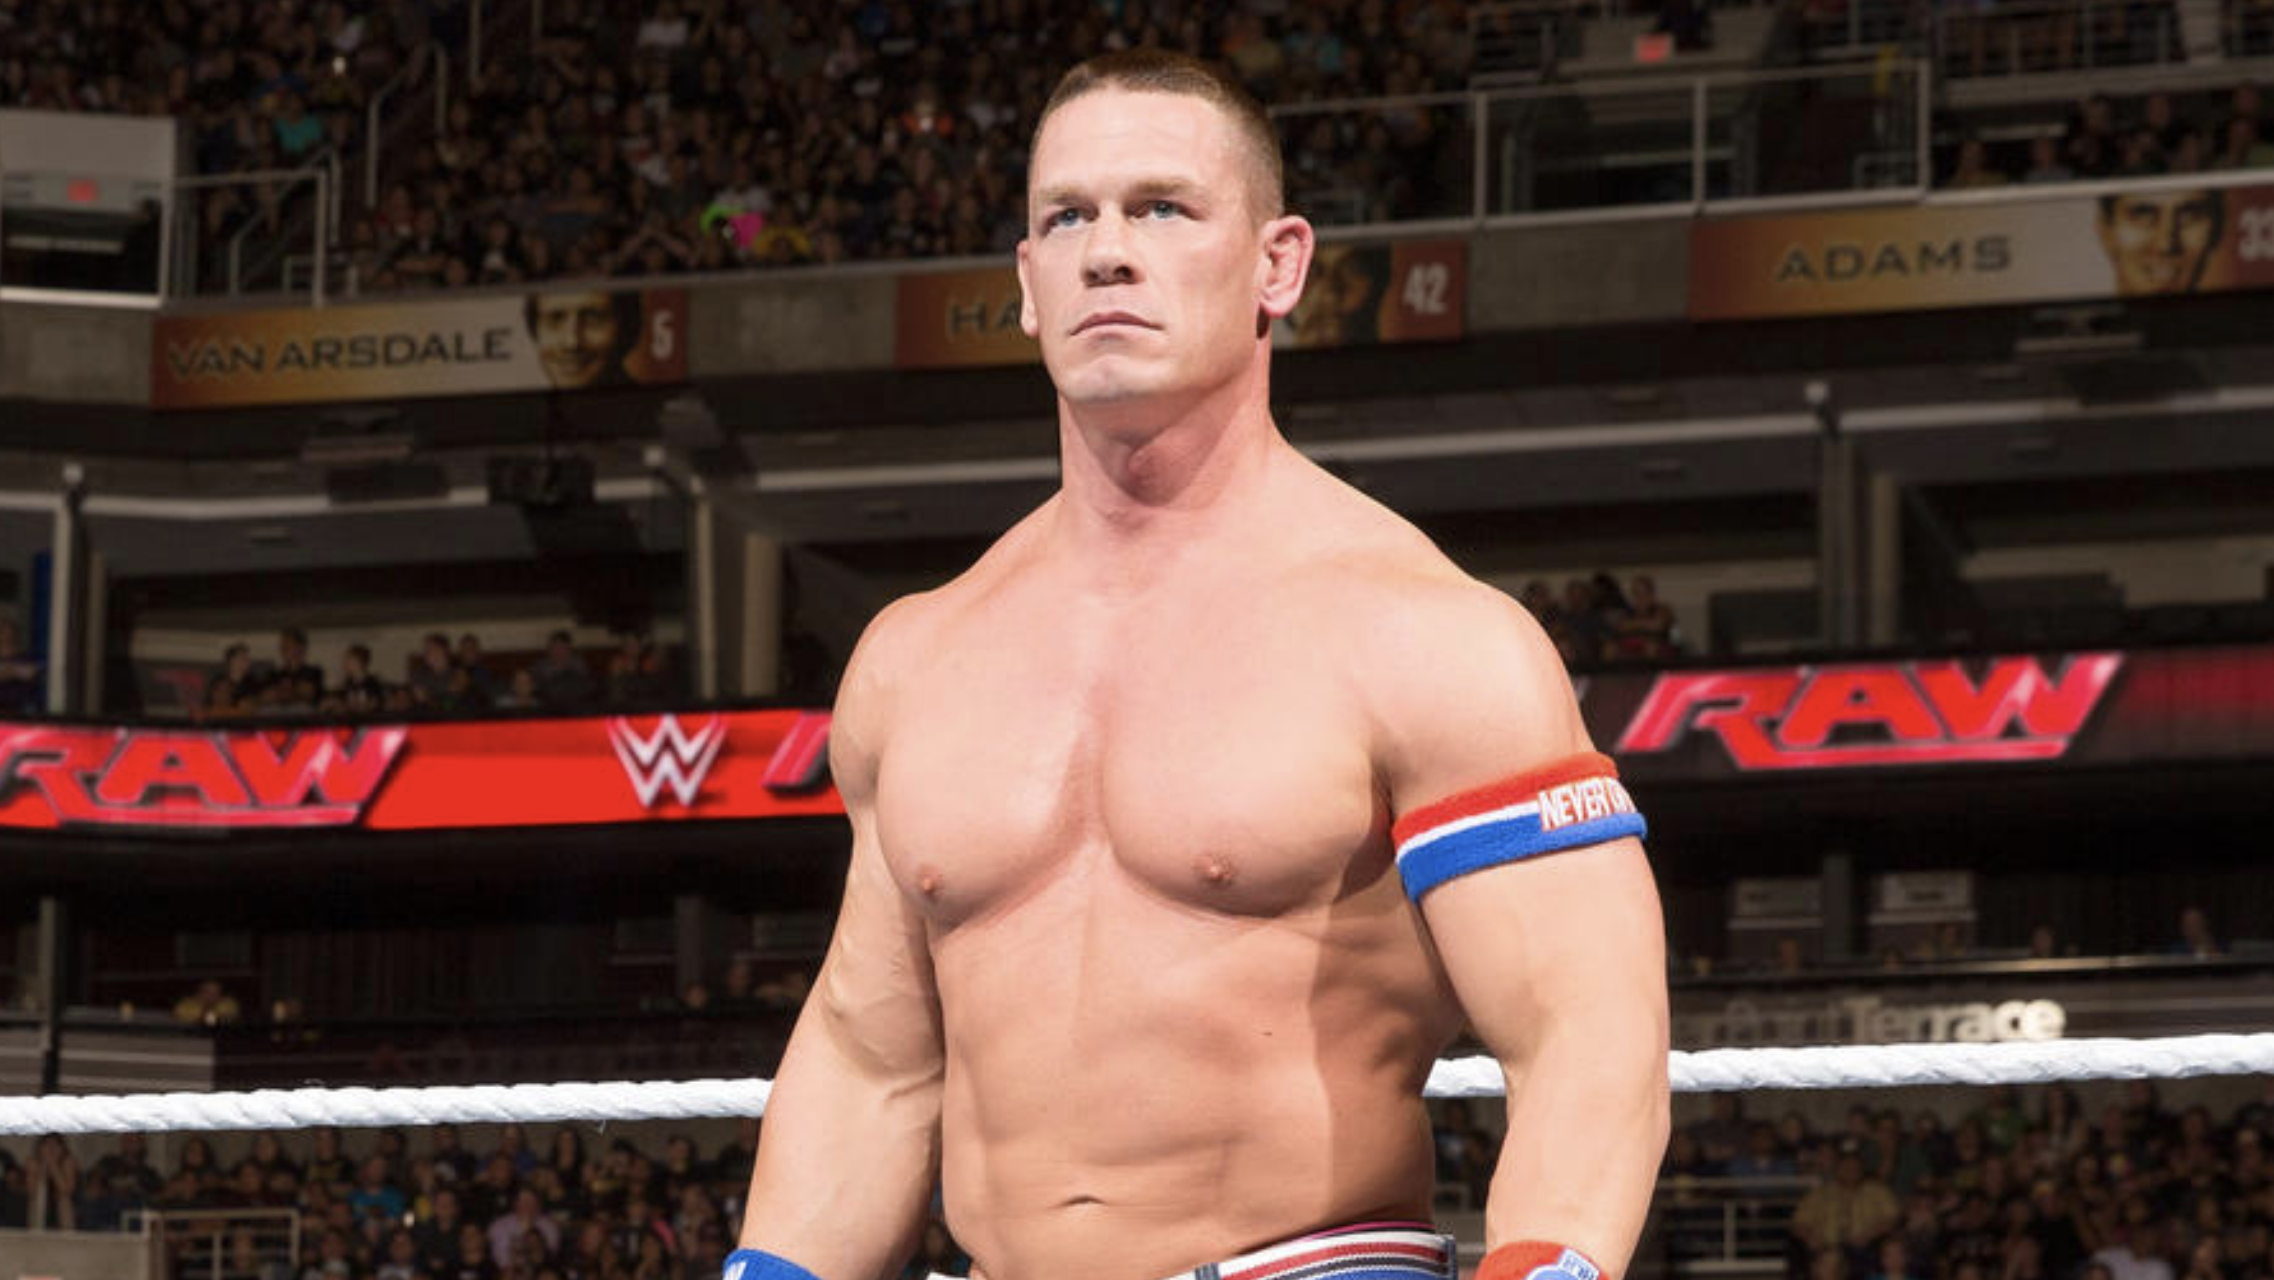 John Cenas Long Awaited Wwe Return Will Take Place In Tampa Tampa Creative Loafing Tampa Bay